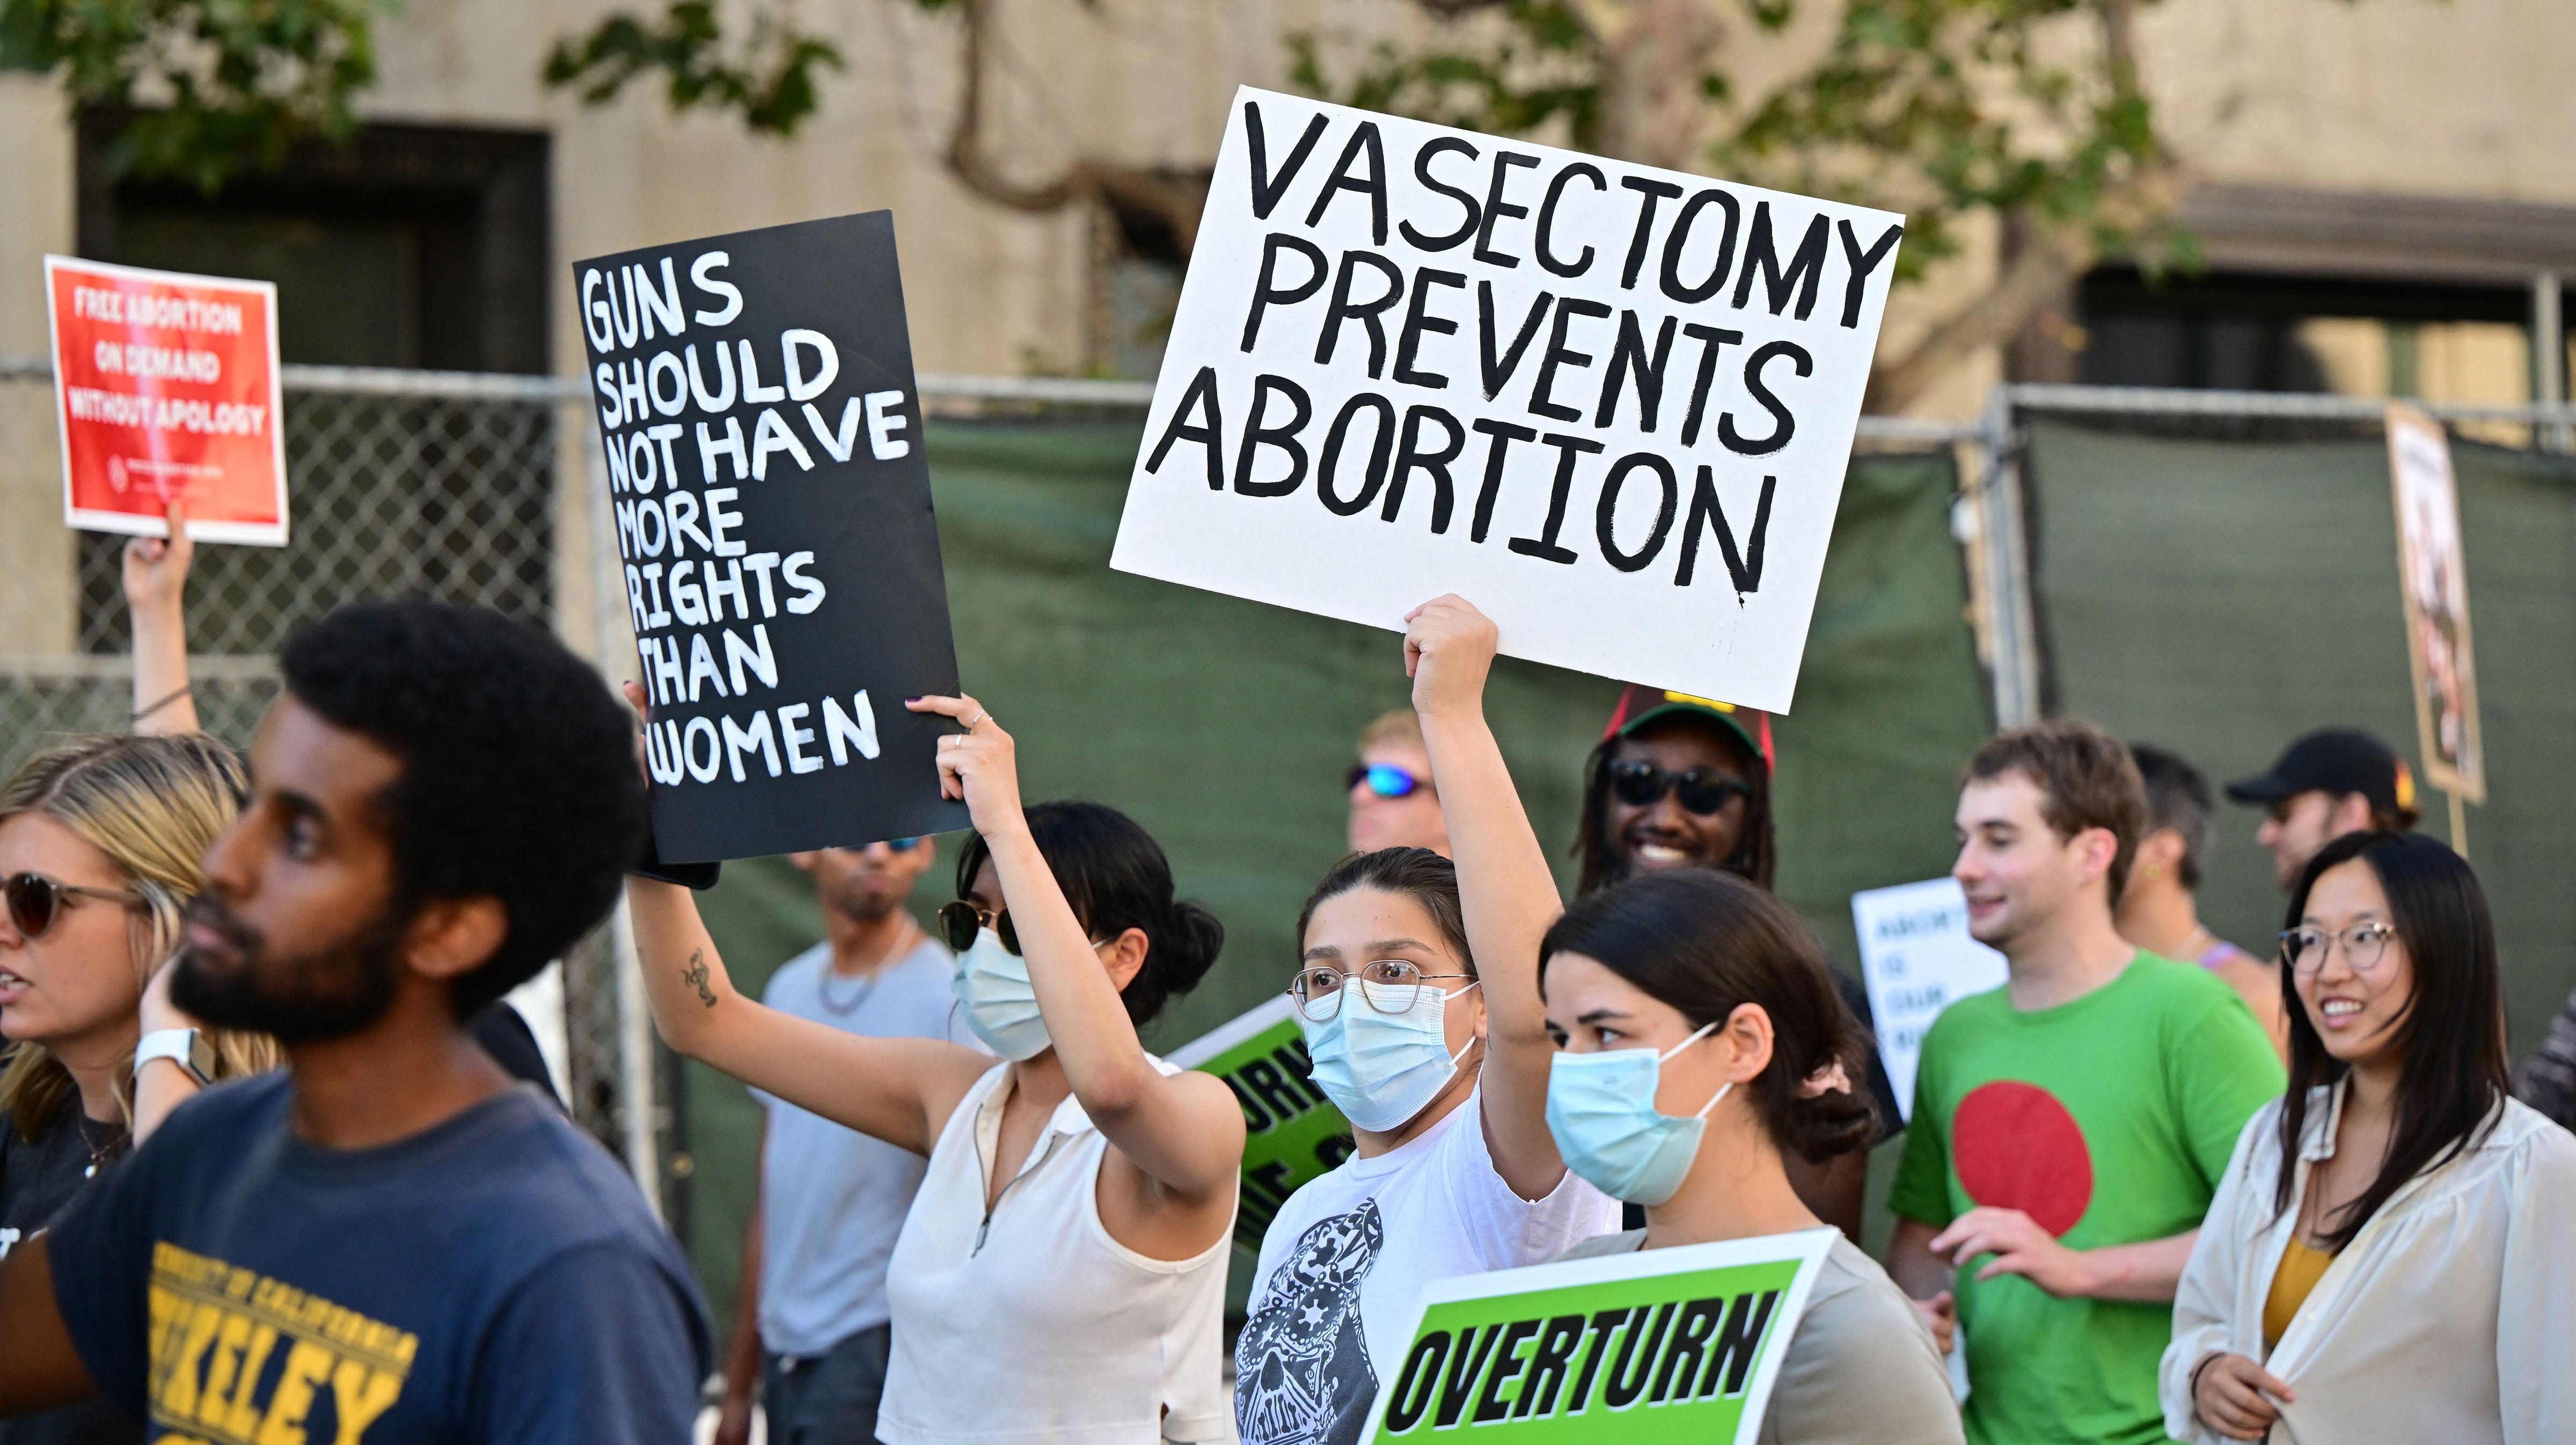 Activistas por el derecho al aborto sostienen un cartel en el que se lee “La vasectomía impide el aborto” mientras protestan tras la prohibición del aborto en EE. UU. por el Tribunal Supremo en Los Ángeles, el 24 de junio 2022.